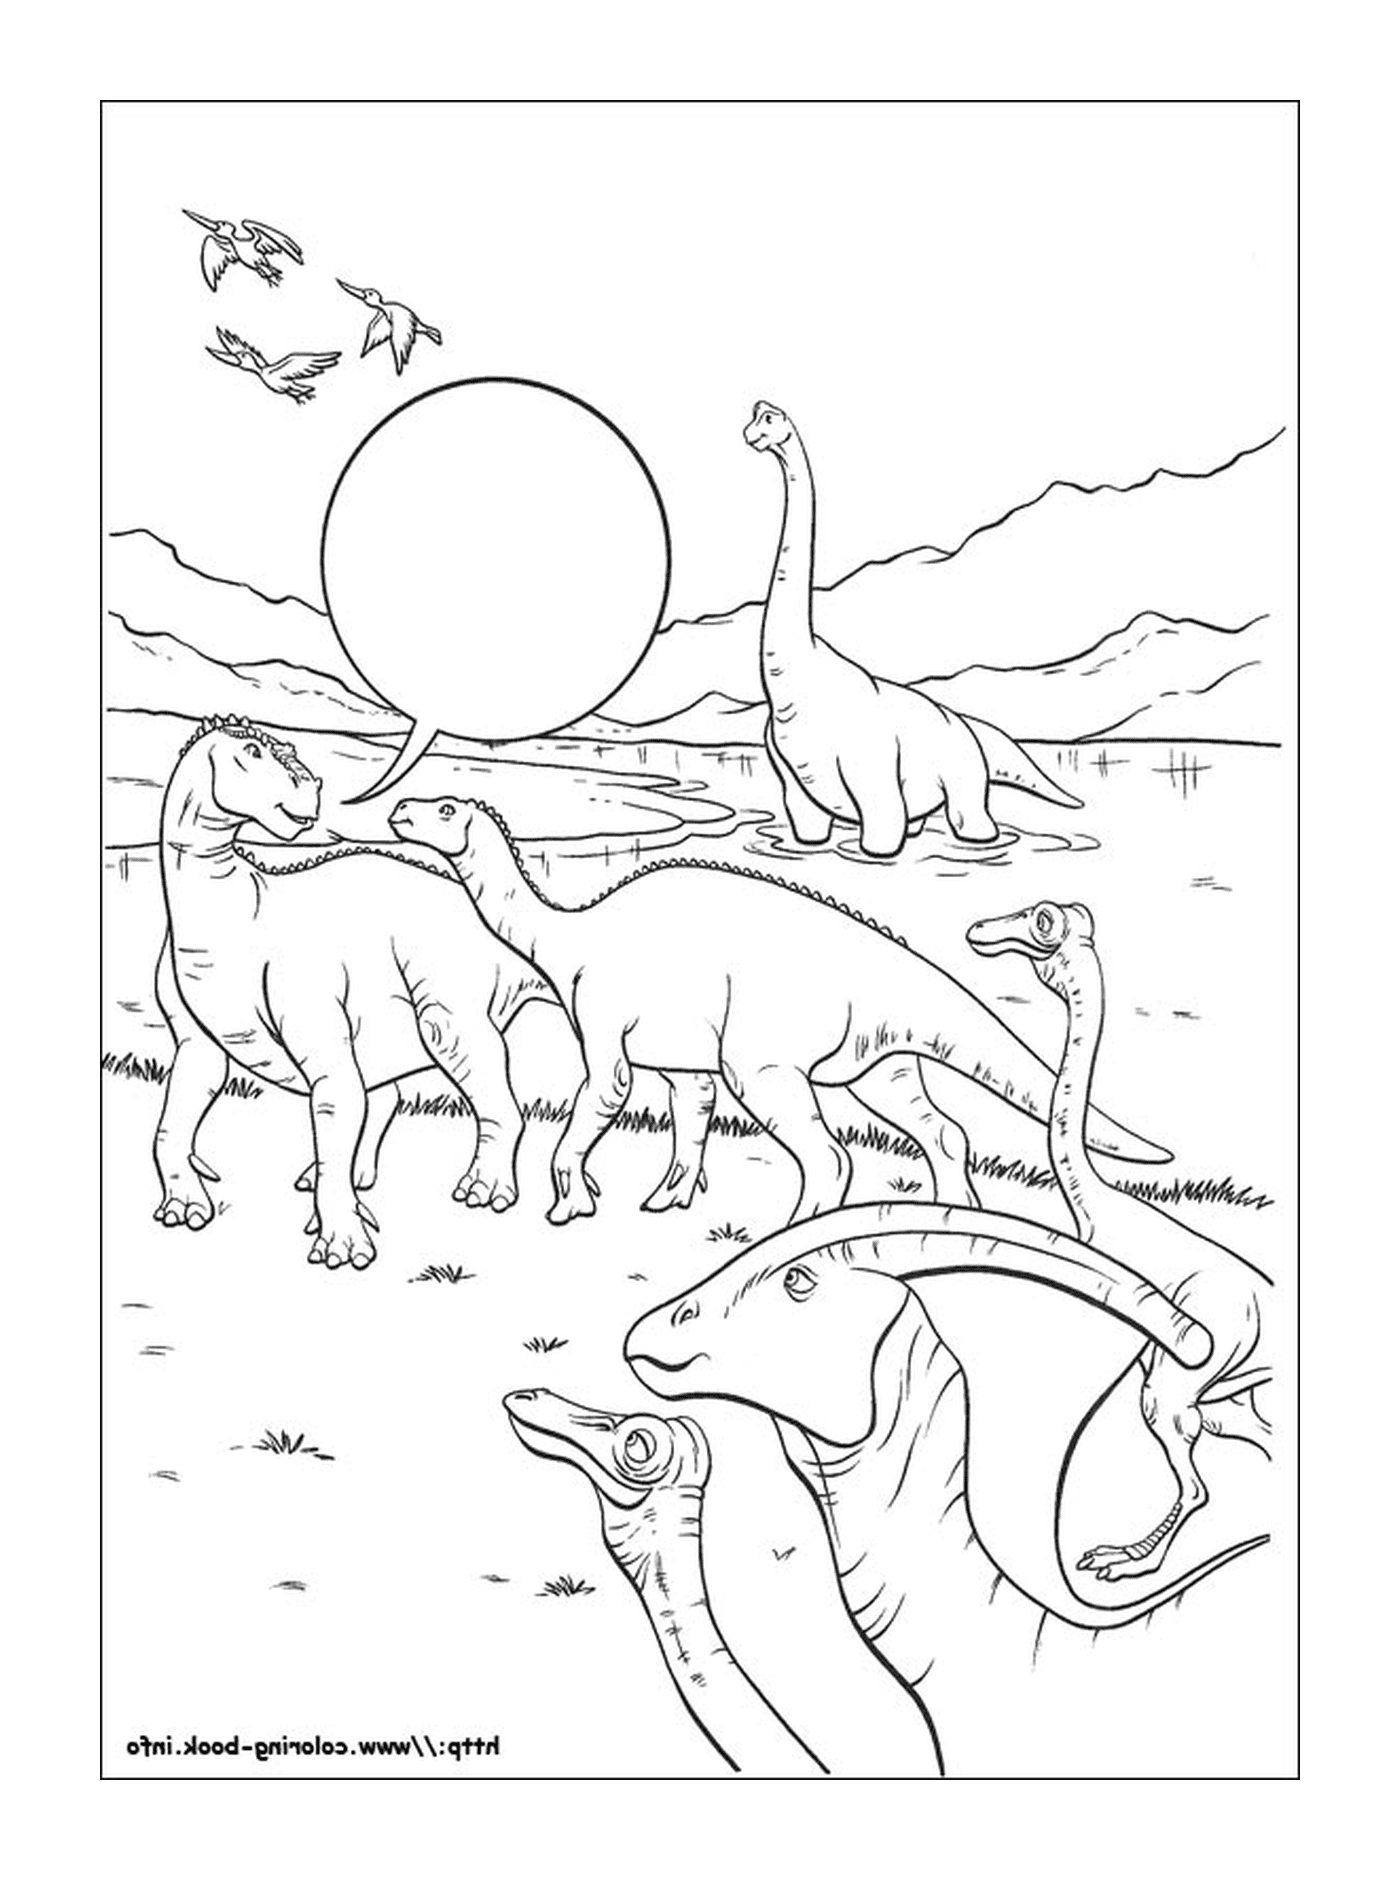  Molti dinosauri visibili in questa immagine 